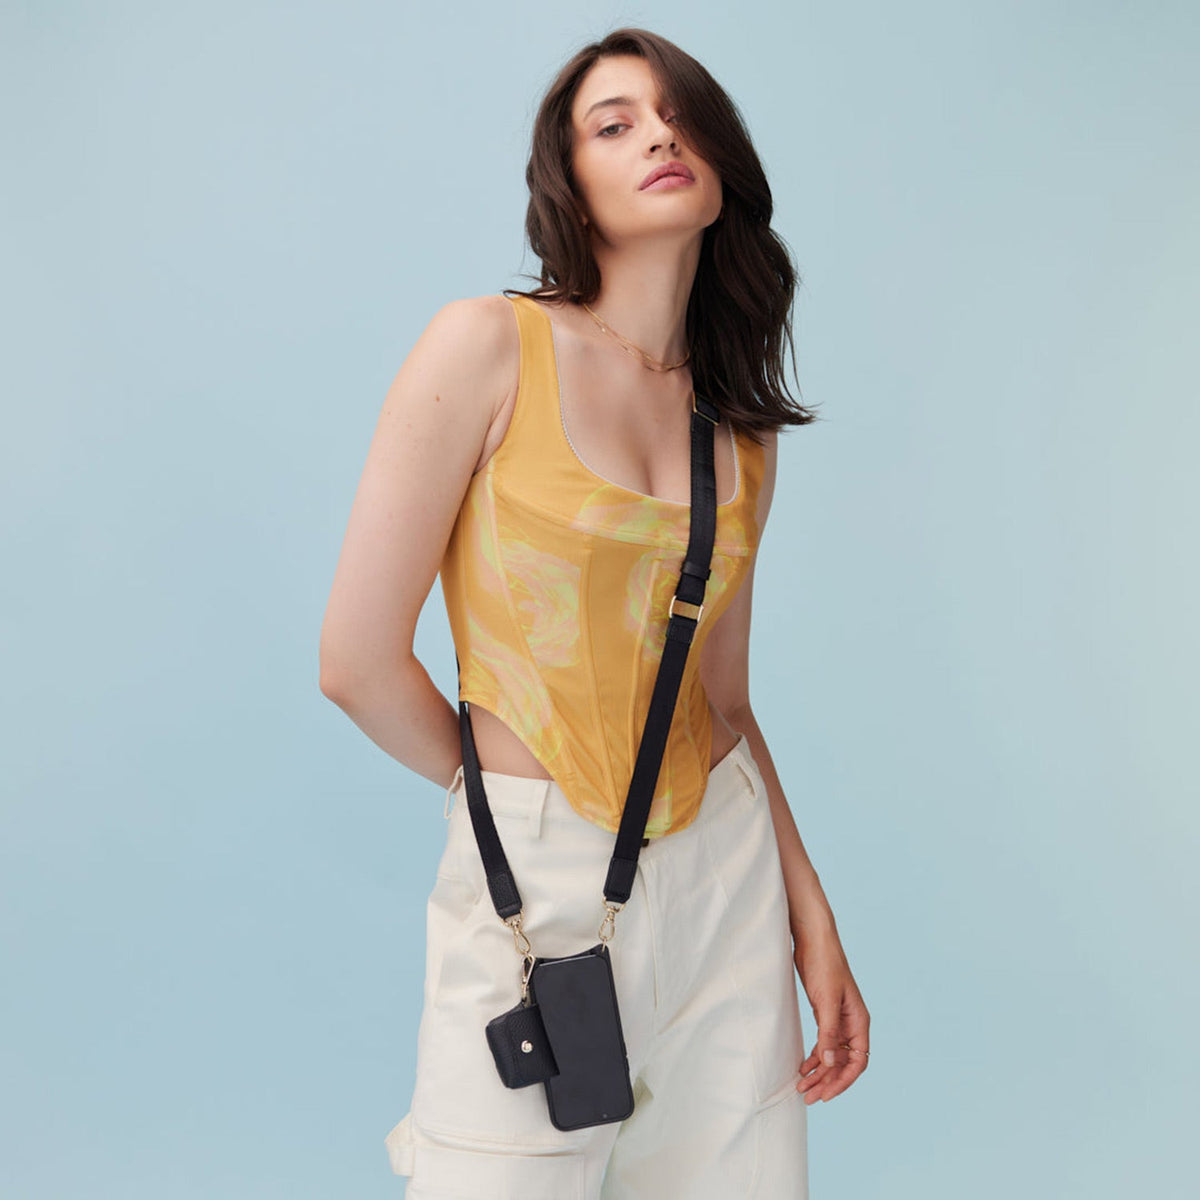 adjustable shoulder bag strap